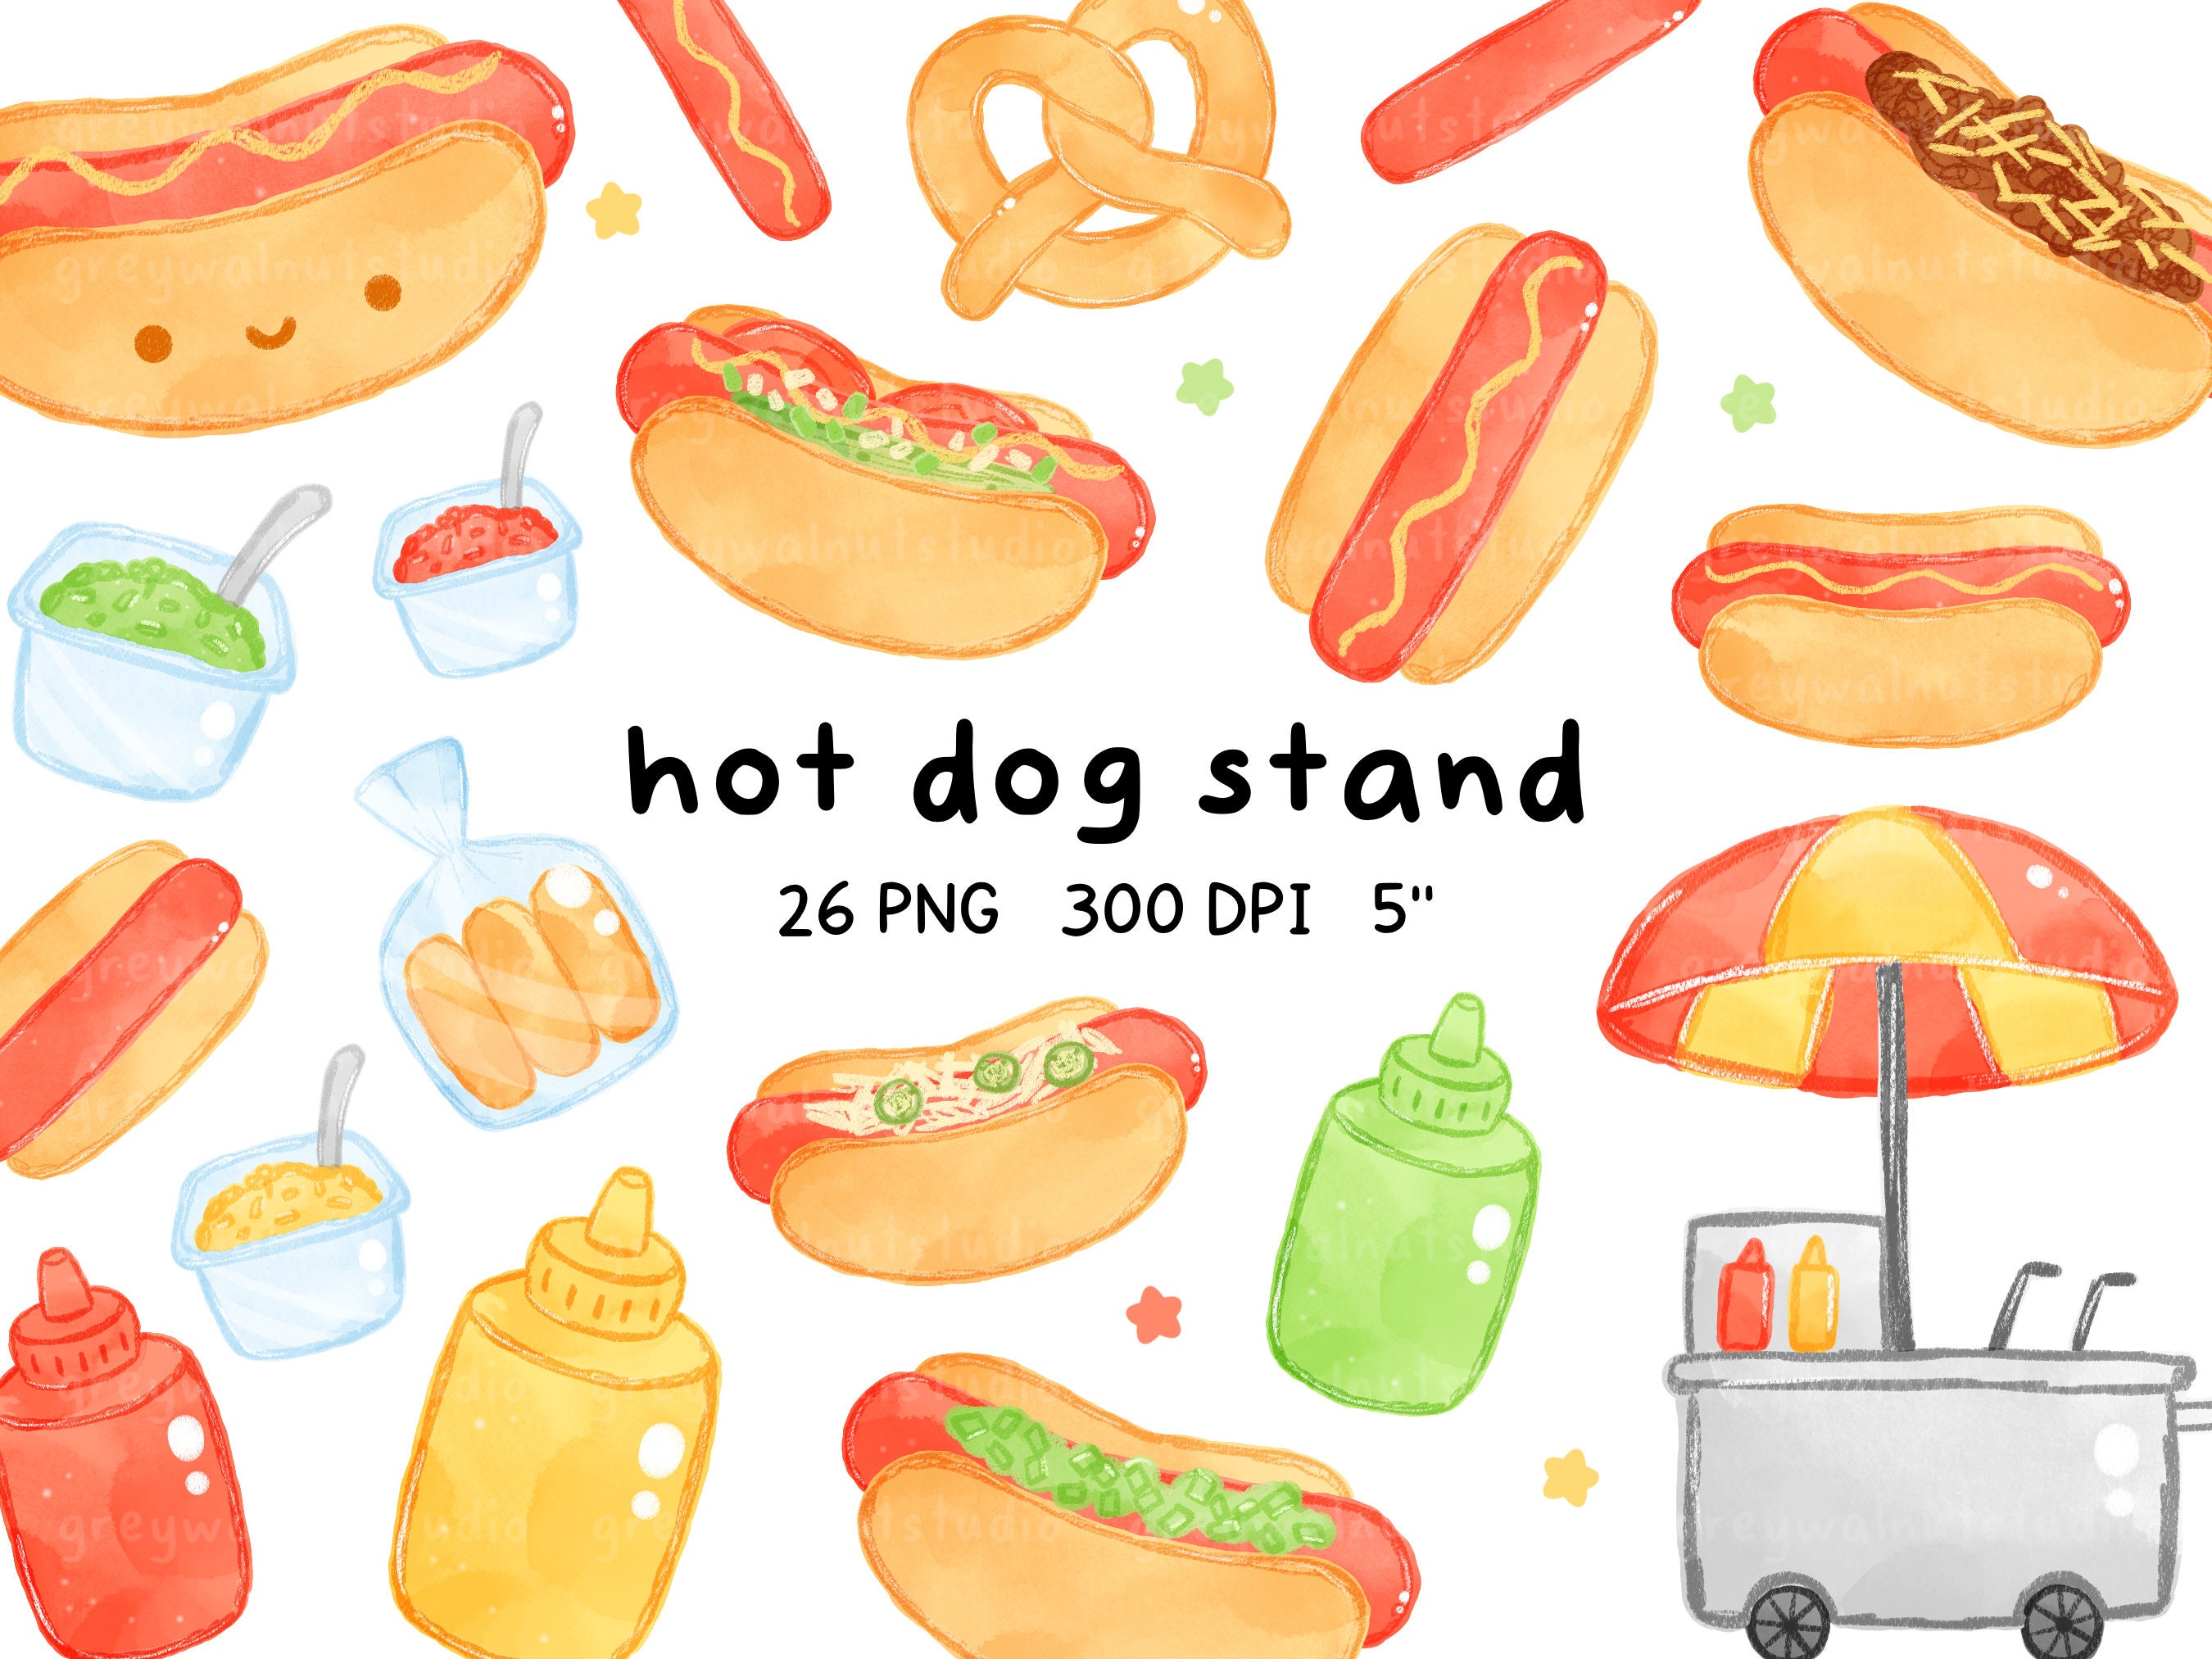 Hot Dog Stand - Etsy Ireland